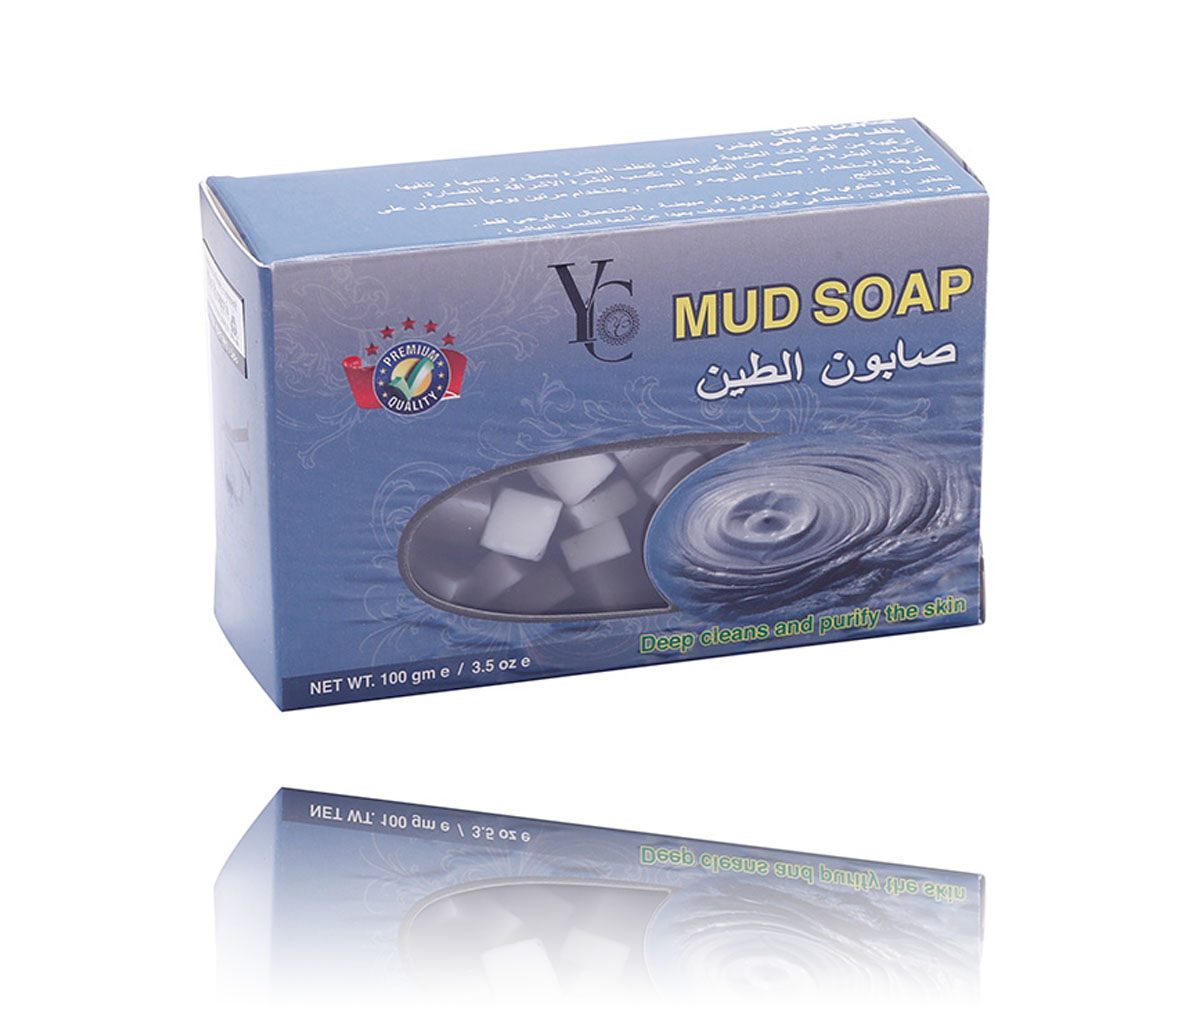 YC MUD SOAP 100GM